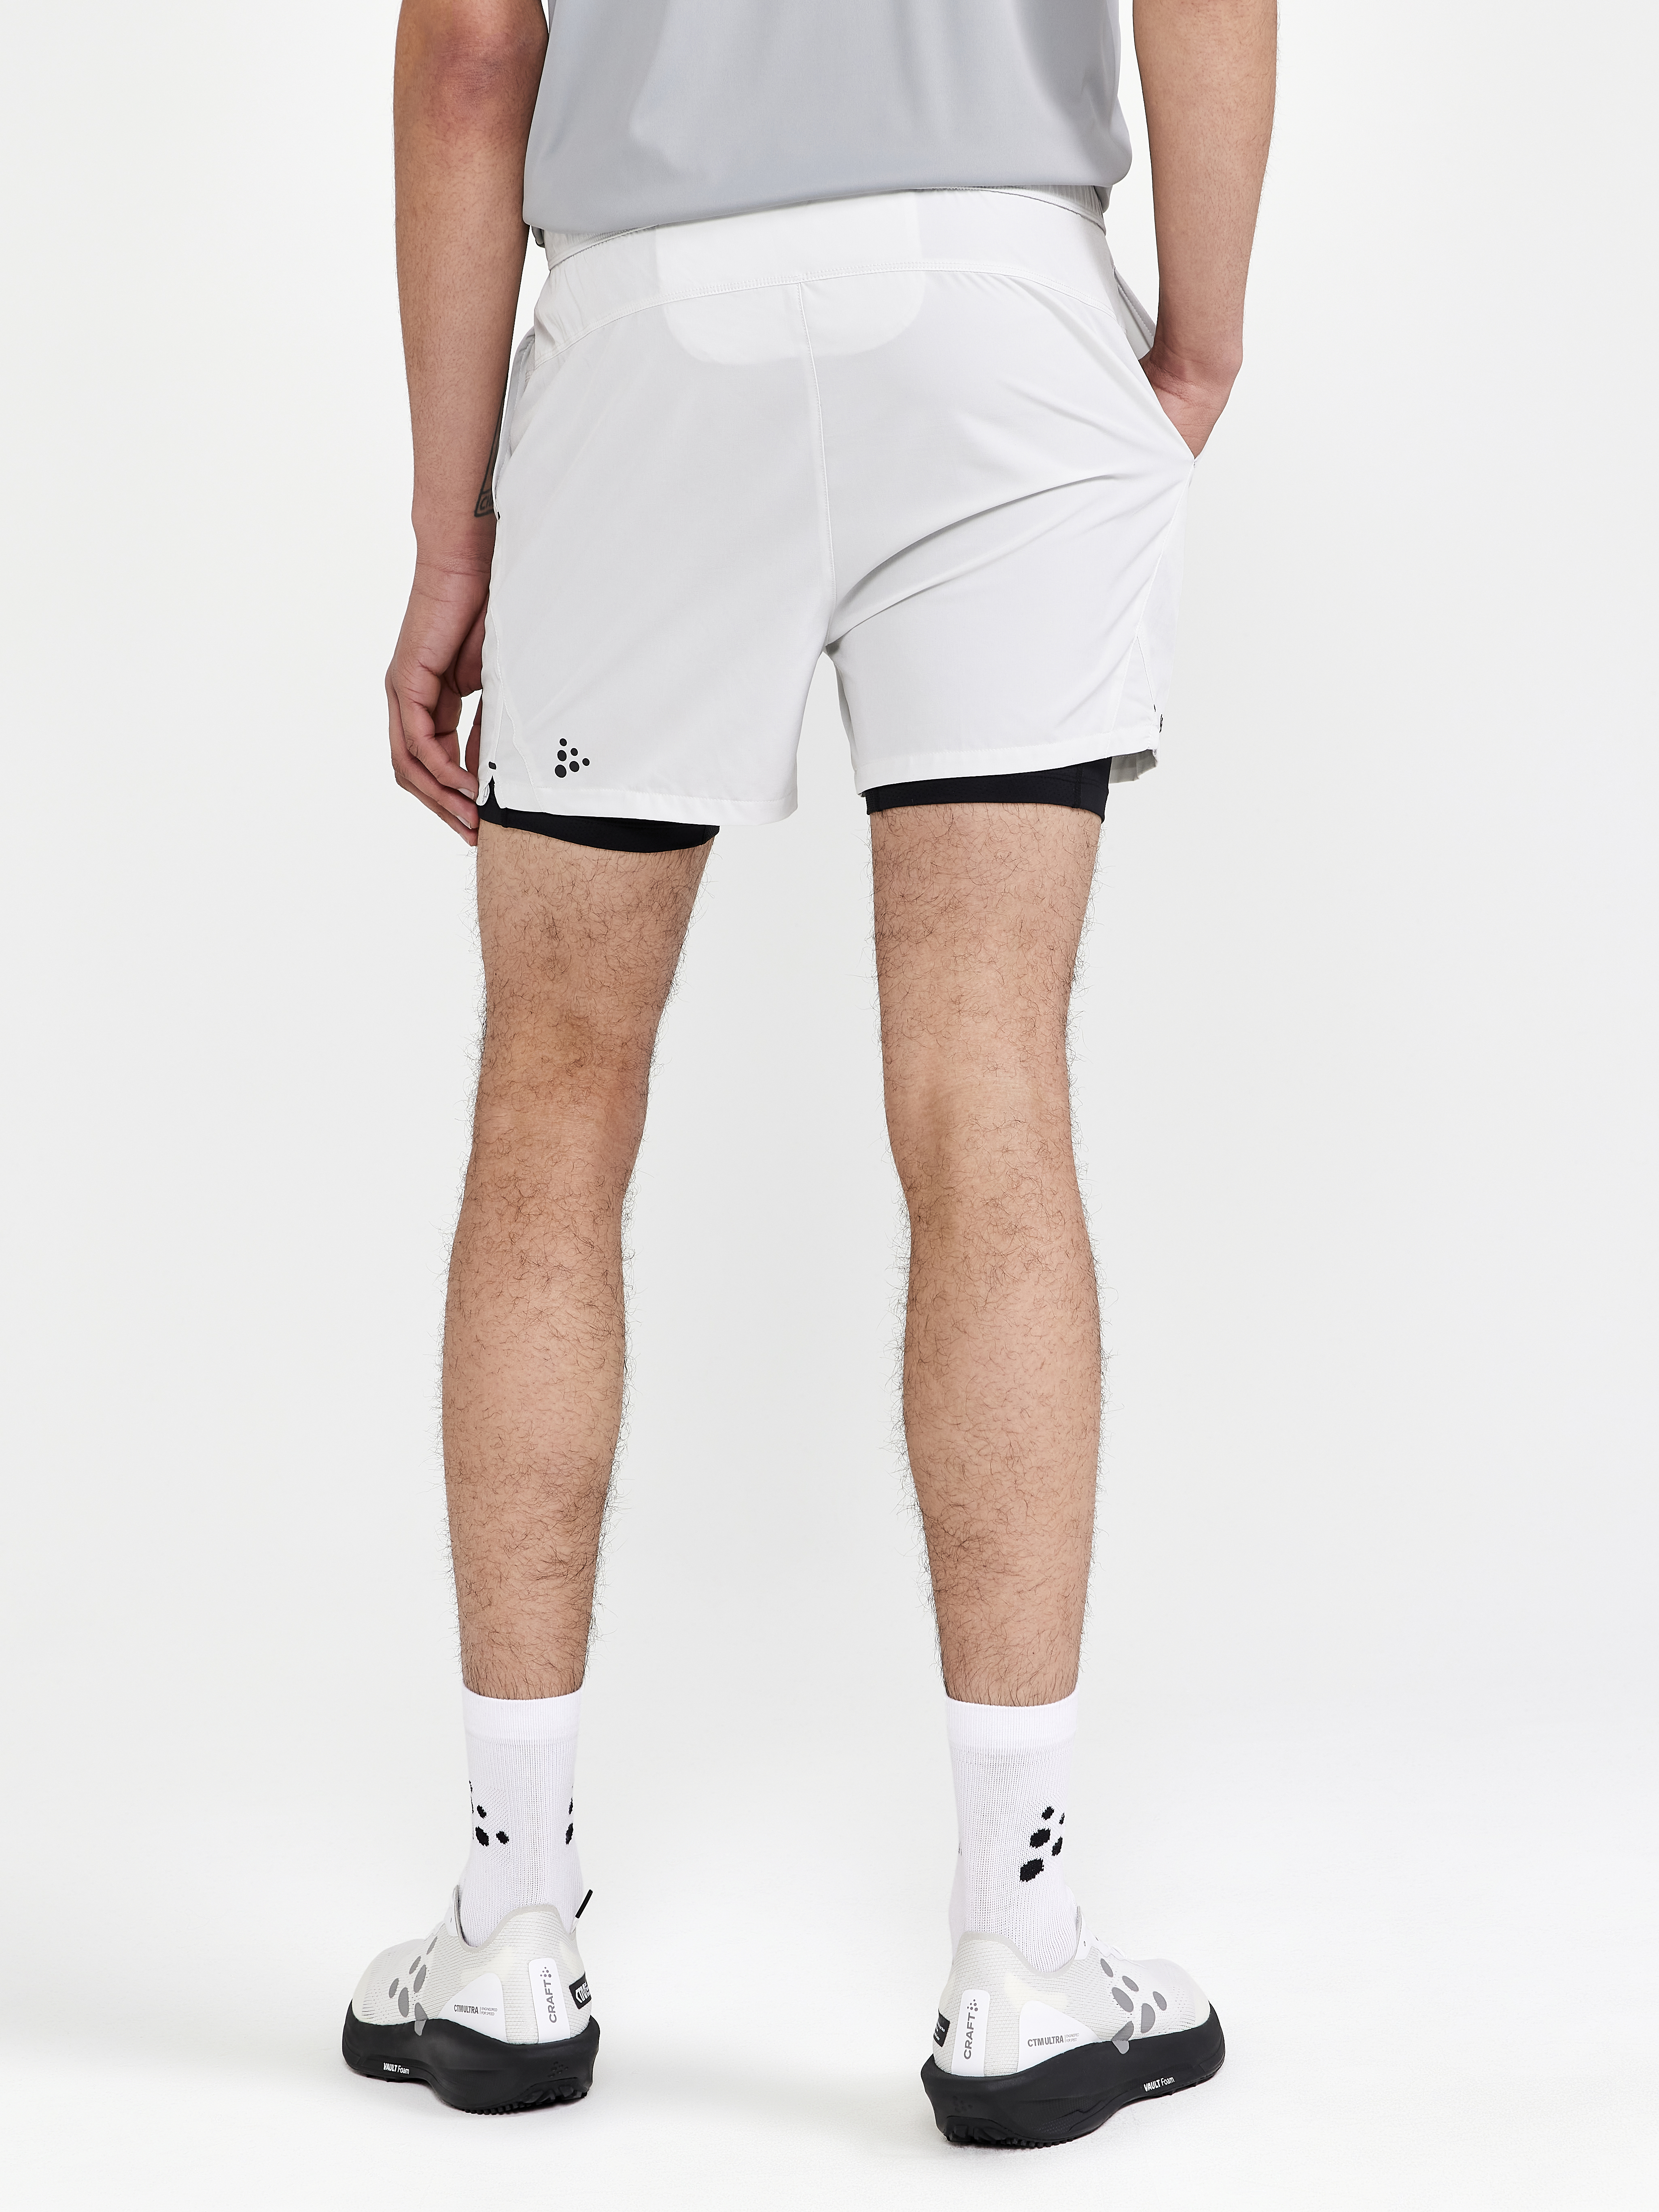 ADV Essence 2-in-1 Stretch Shorts M - Grey | Craft Sportswear